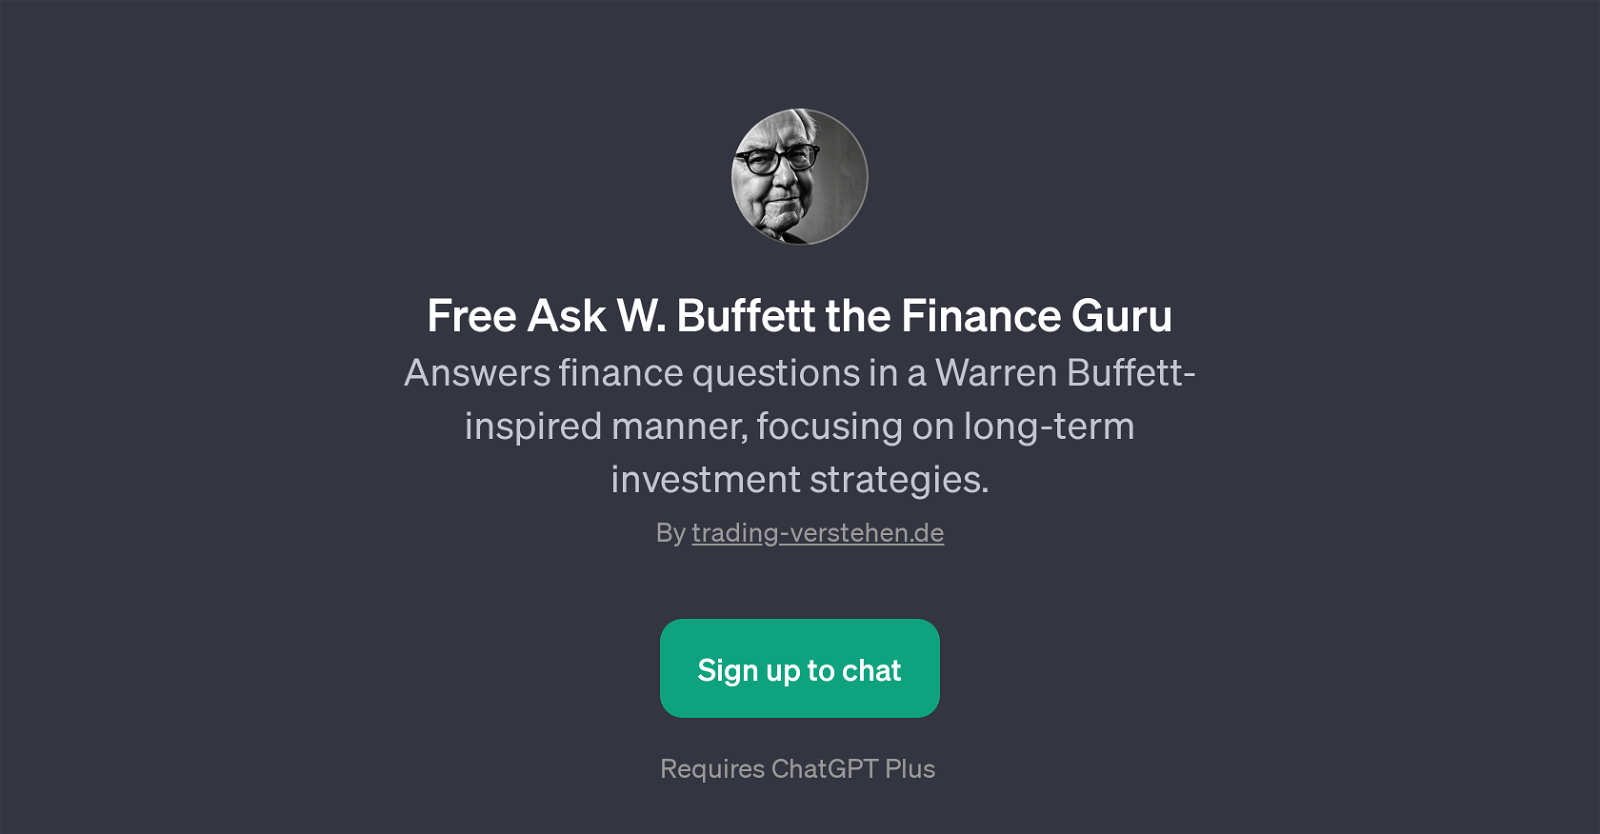 Free Ask W. Buffett the Finance Guru website